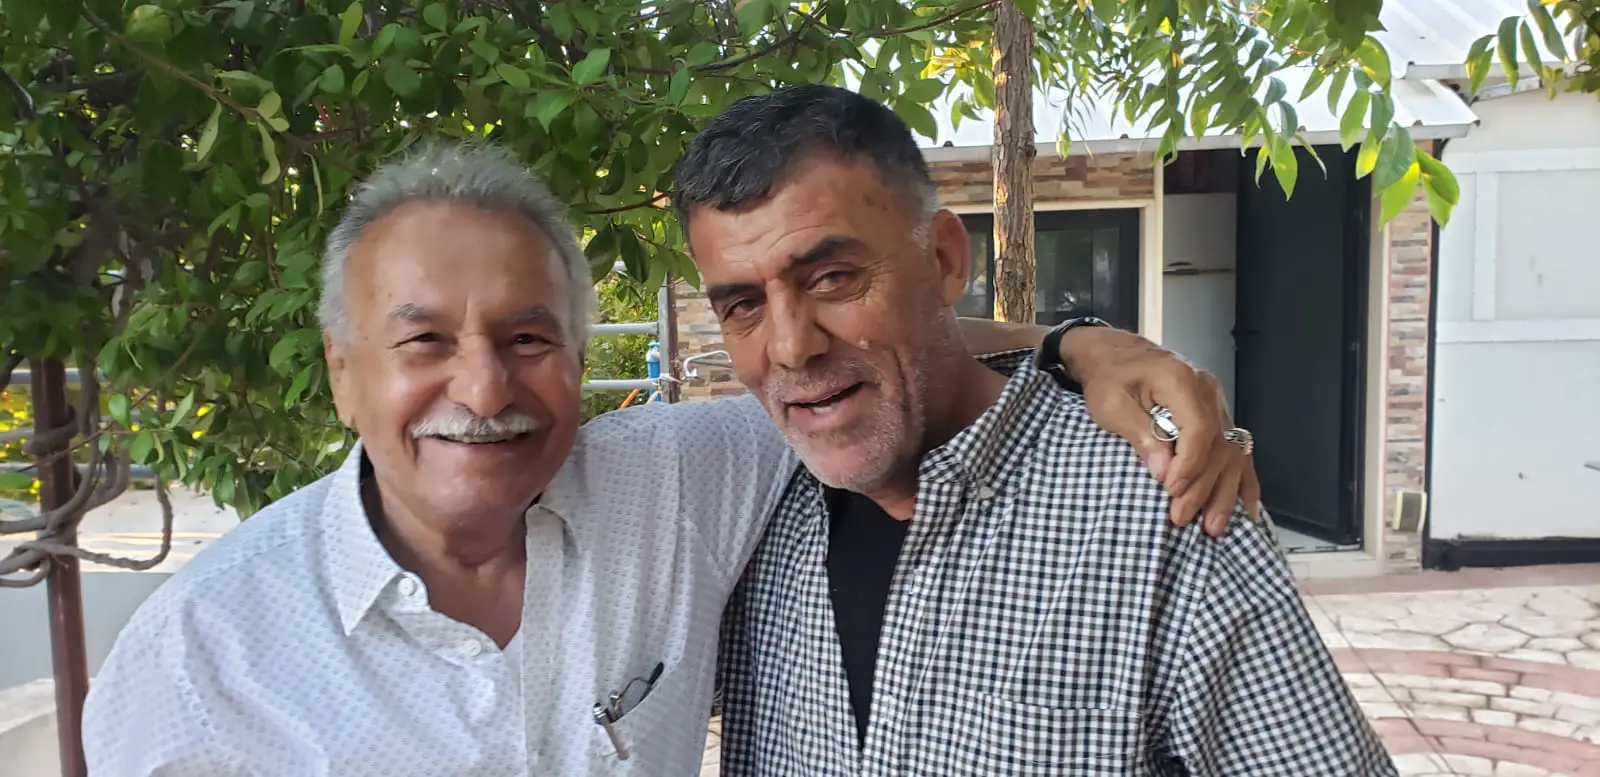 المختار أبو فيروز وغريمه المرشح السابق للمخترة في الحي الشرقي حسن عكر